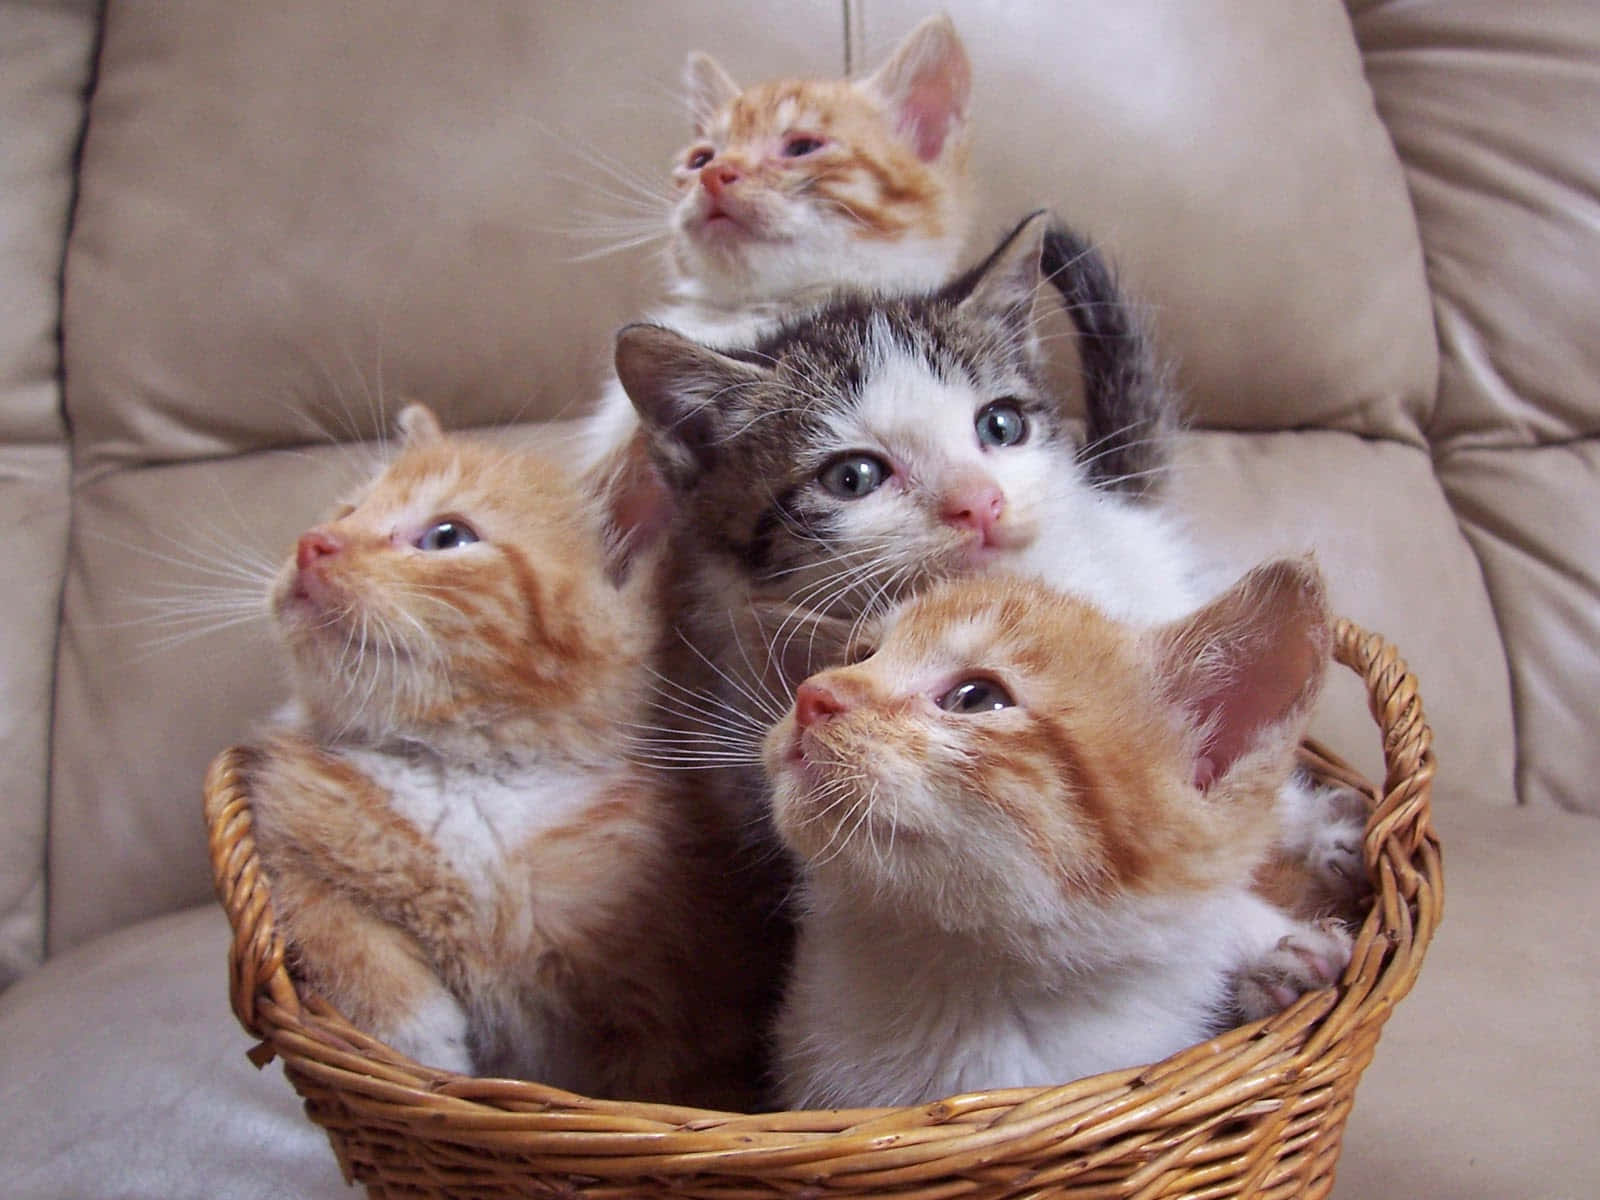 Imagende Una Canasta De Gatos Adorables